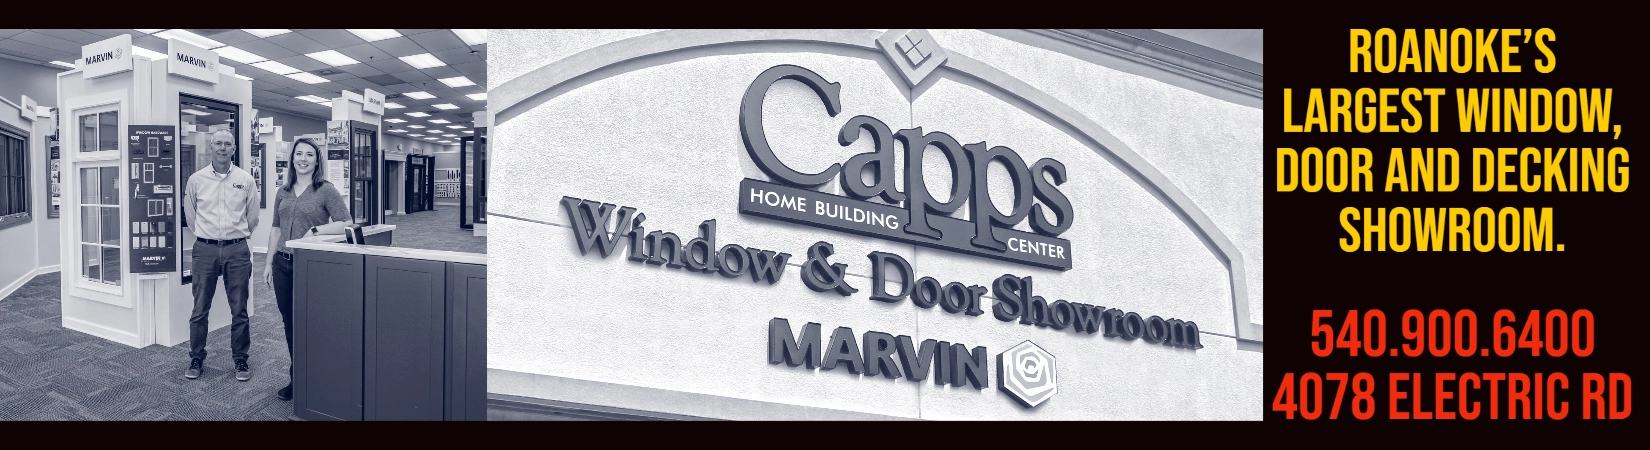 Capps Window & Door Showroom Logo